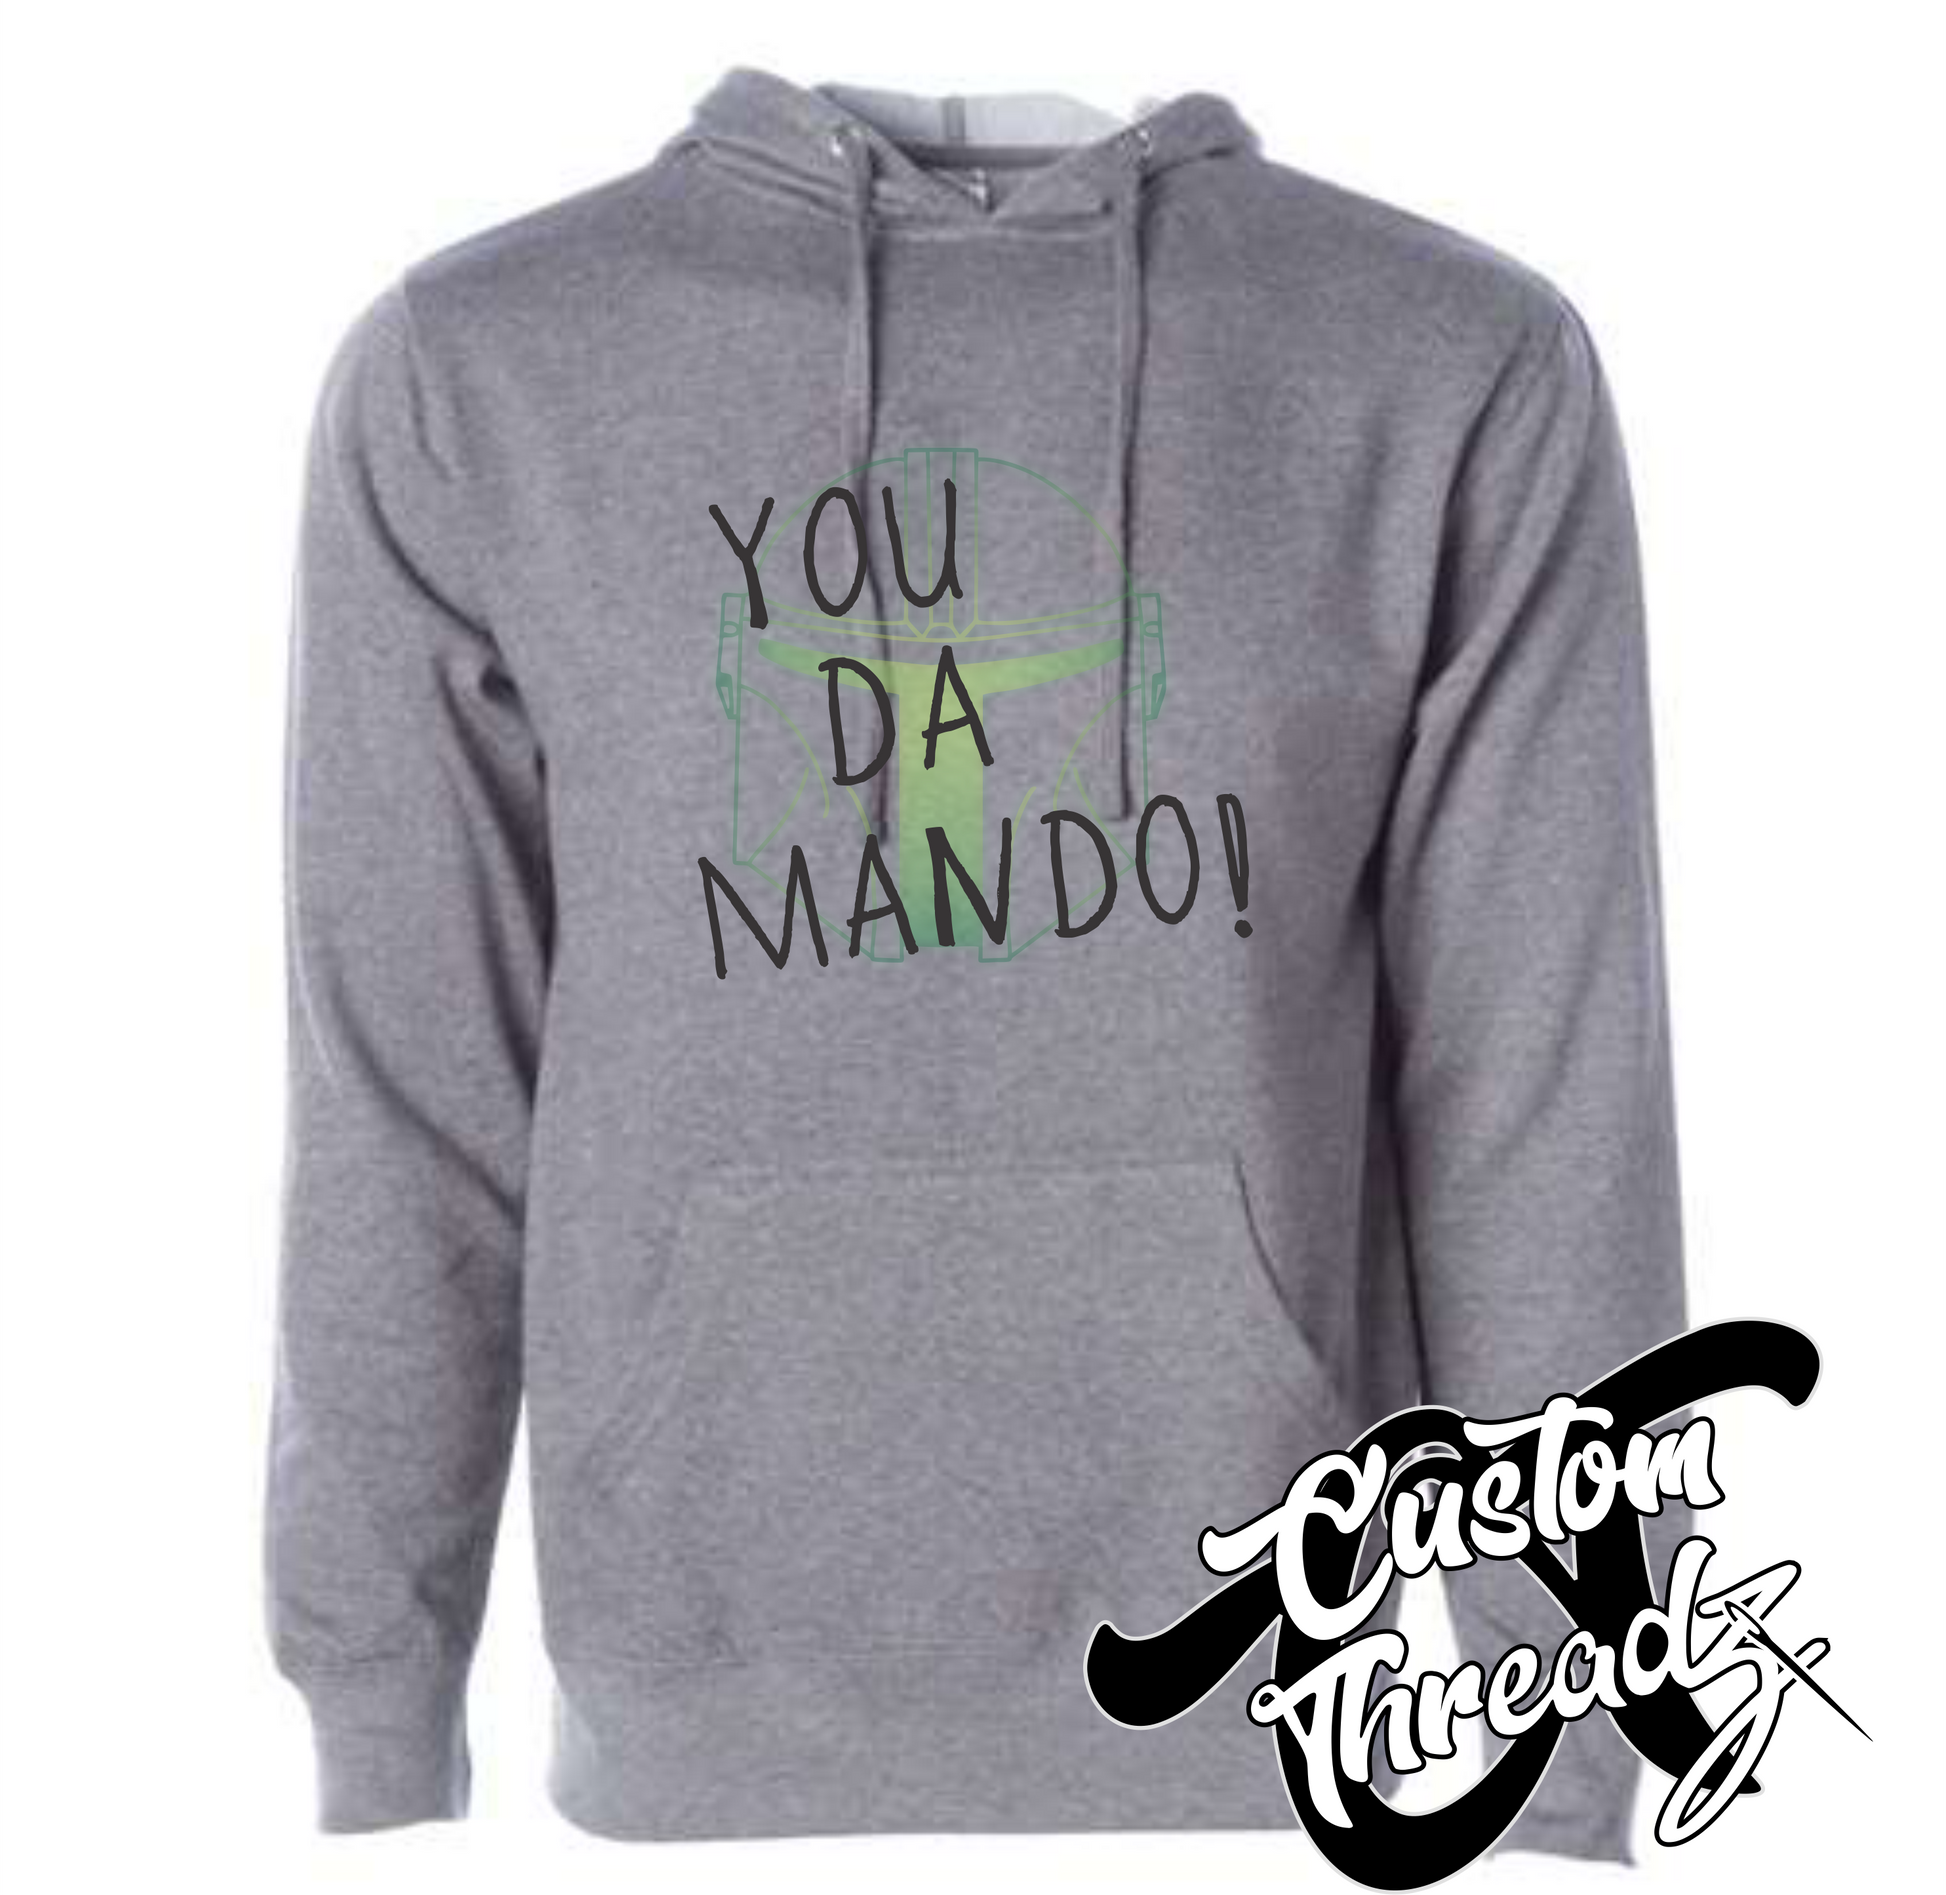 gunmetal grey hoodie with you da mando mandalorian star wars DTG printed design